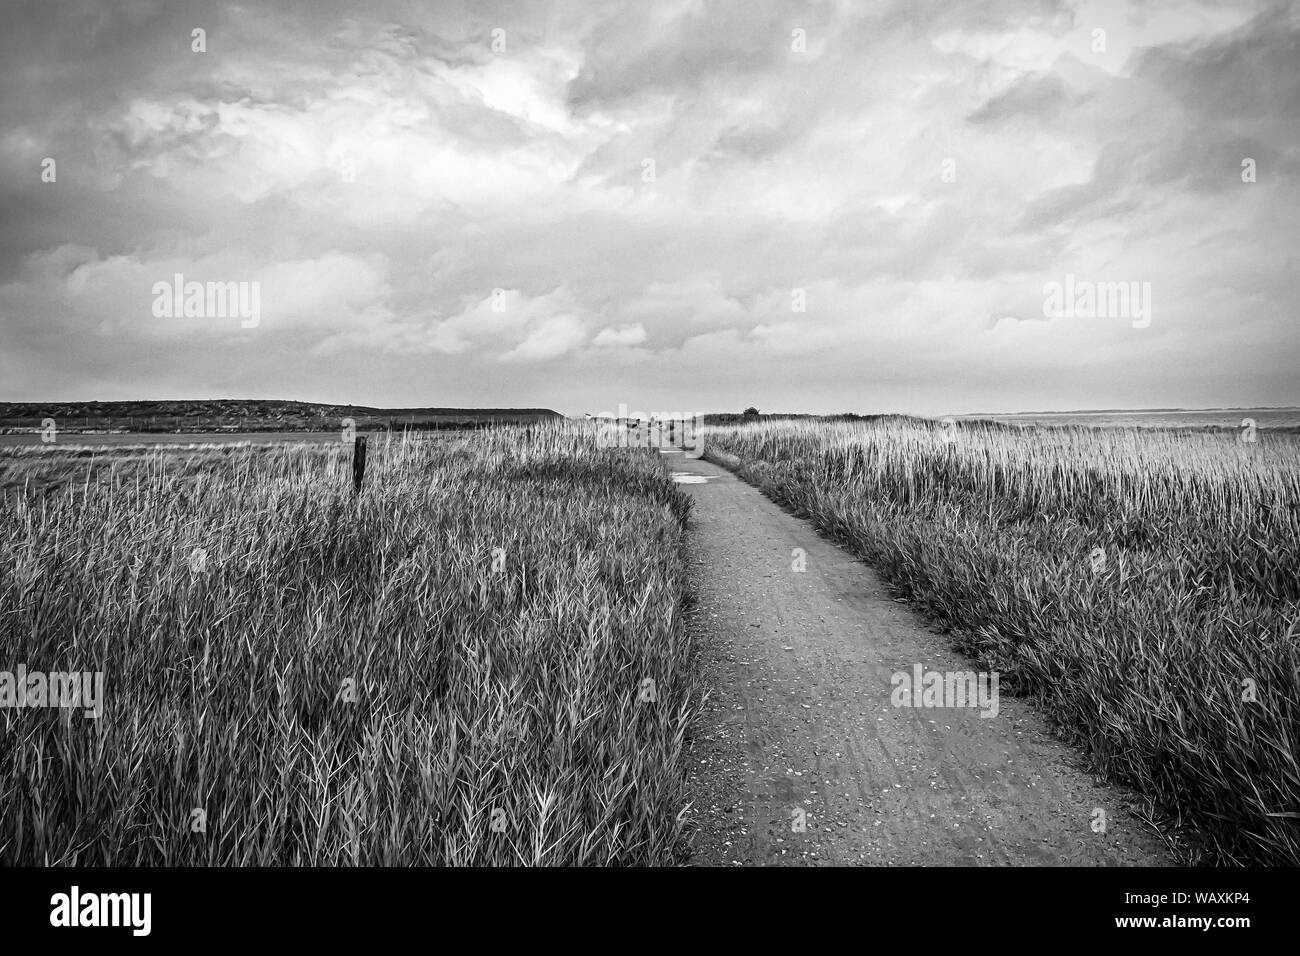 Cours sur la côte de l'île d'Amrum, photo en noir et blanc Banque D'Images